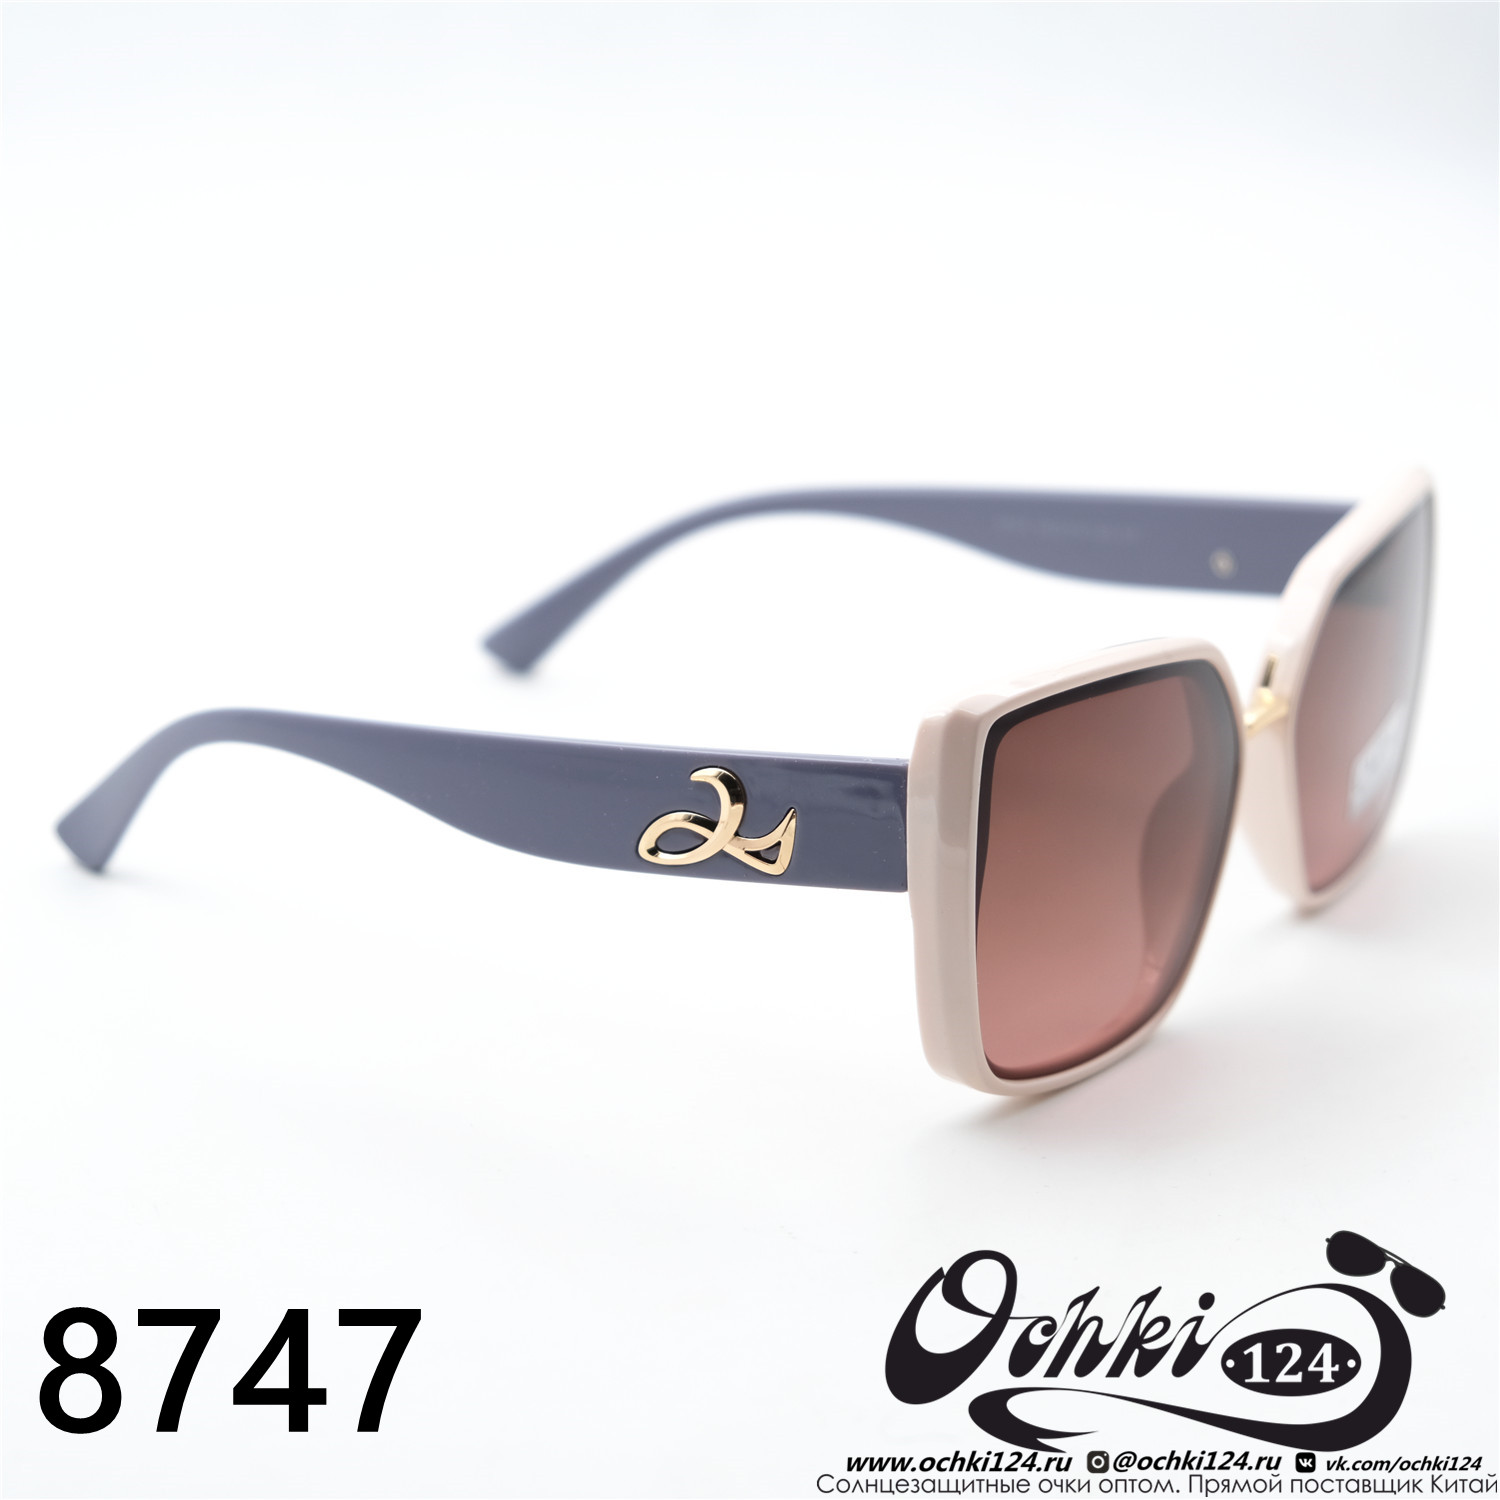  Солнцезащитные очки картинка 2023 Женские Геометрические формы Caipai 8747-C7 